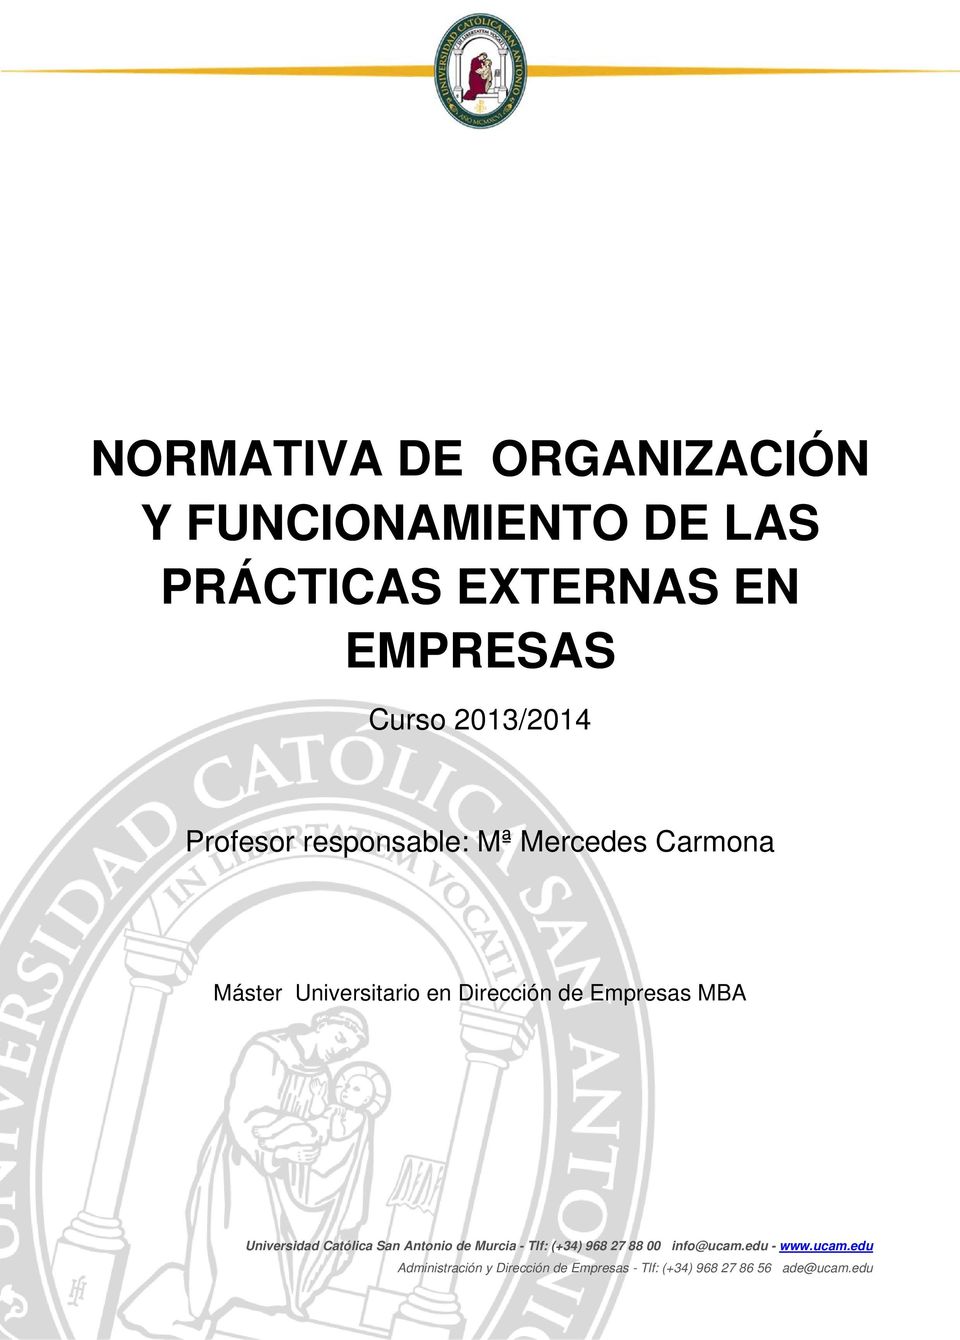 Empresas MBA Universidad Católica San Antonio de Murcia - Tlf: (+34) 968 27 88 00